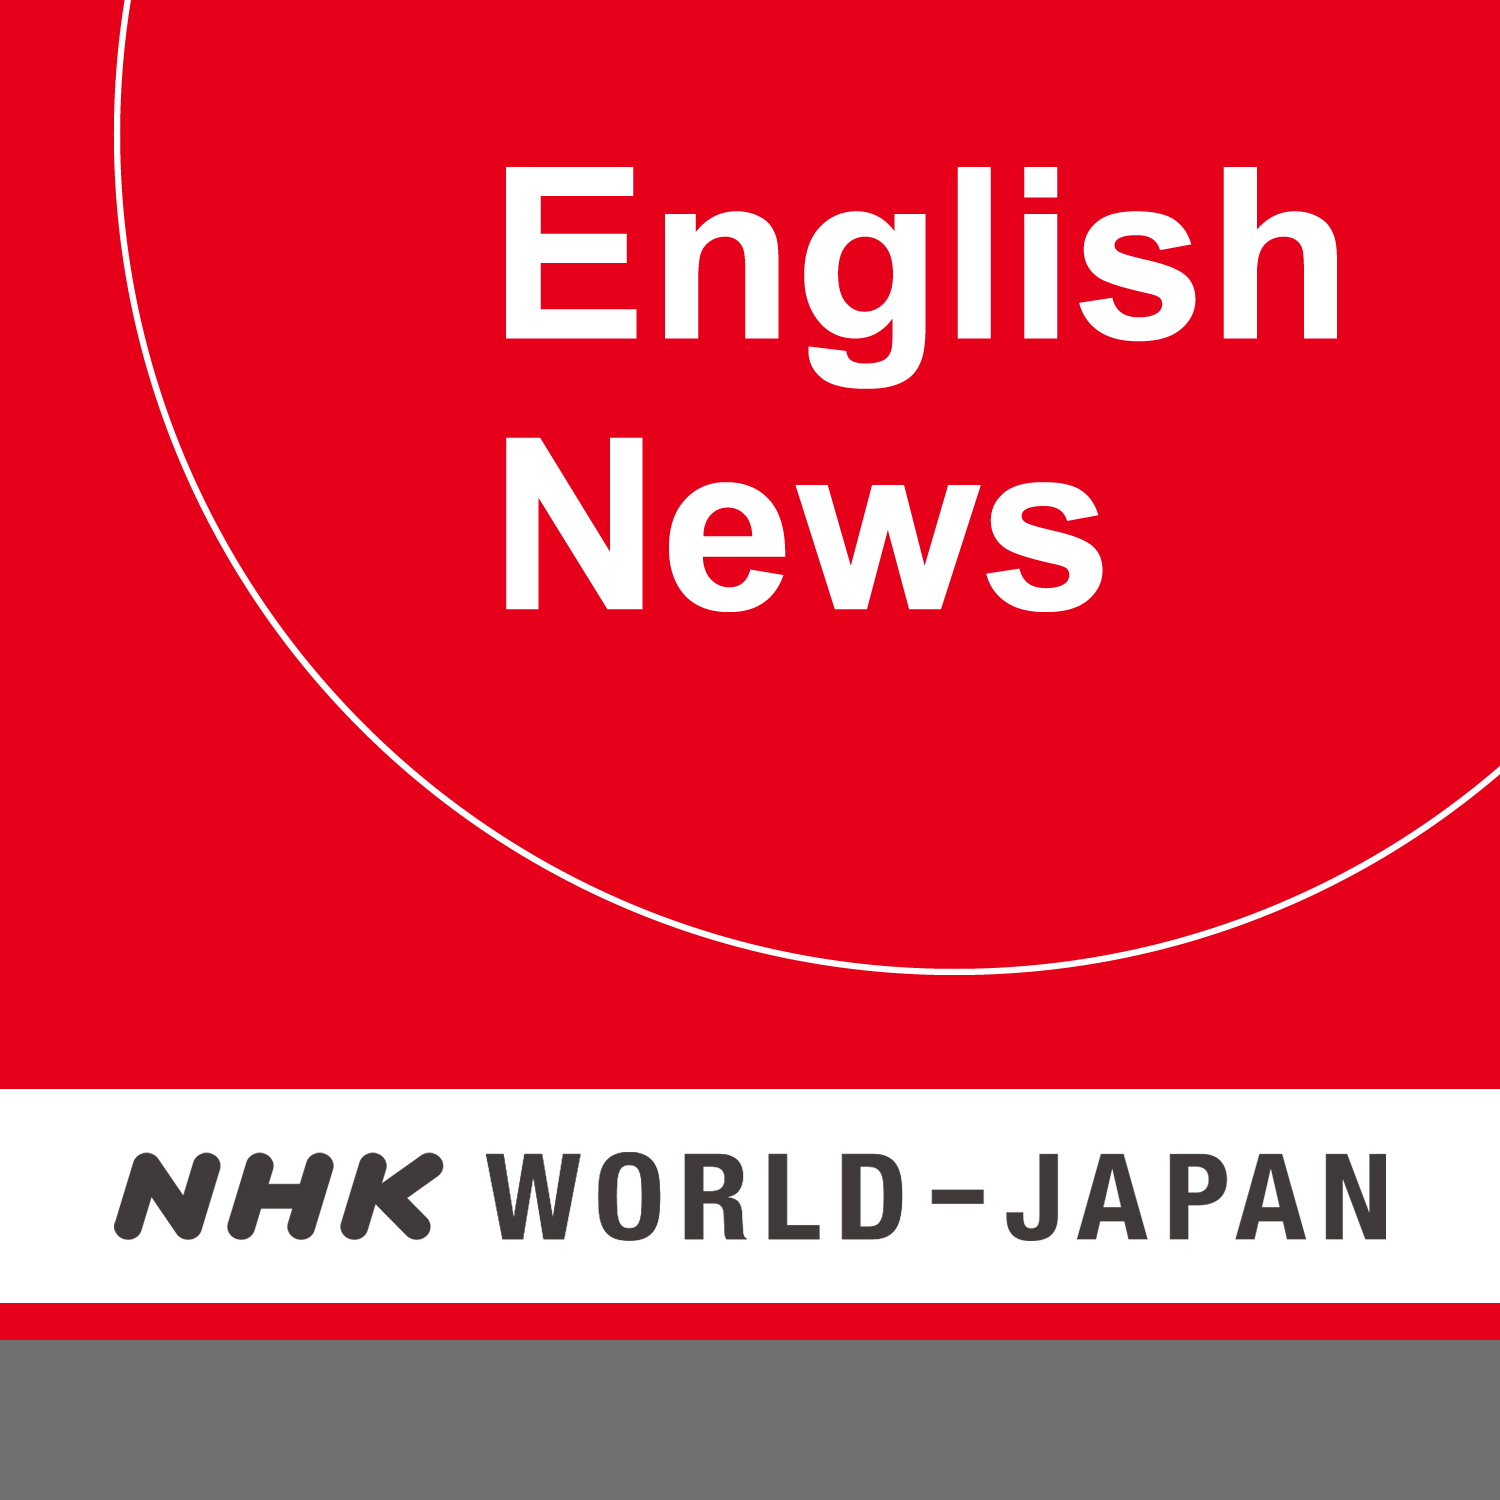 English nhk news